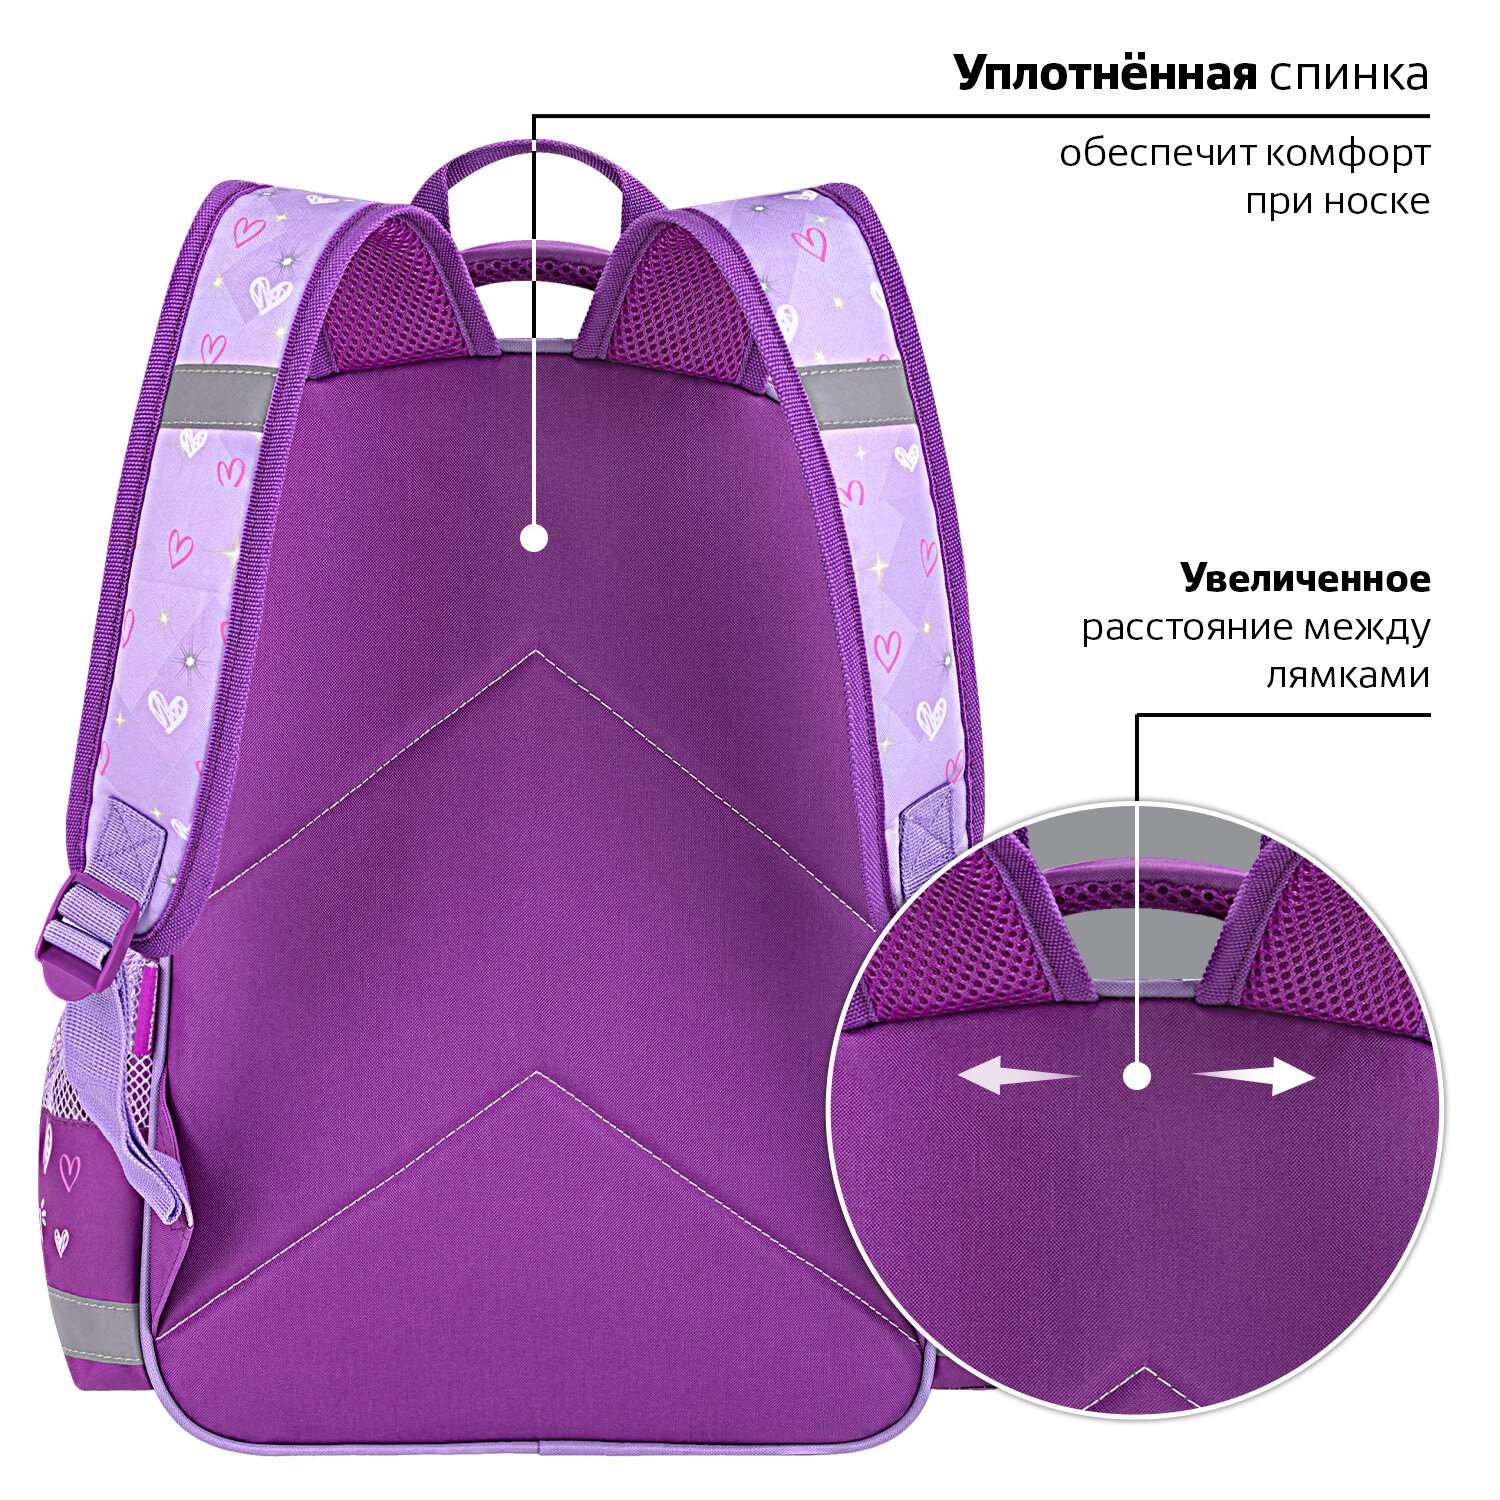 Рюкзак школьный Пифагор для девочки детский в 1 класс - фото 6